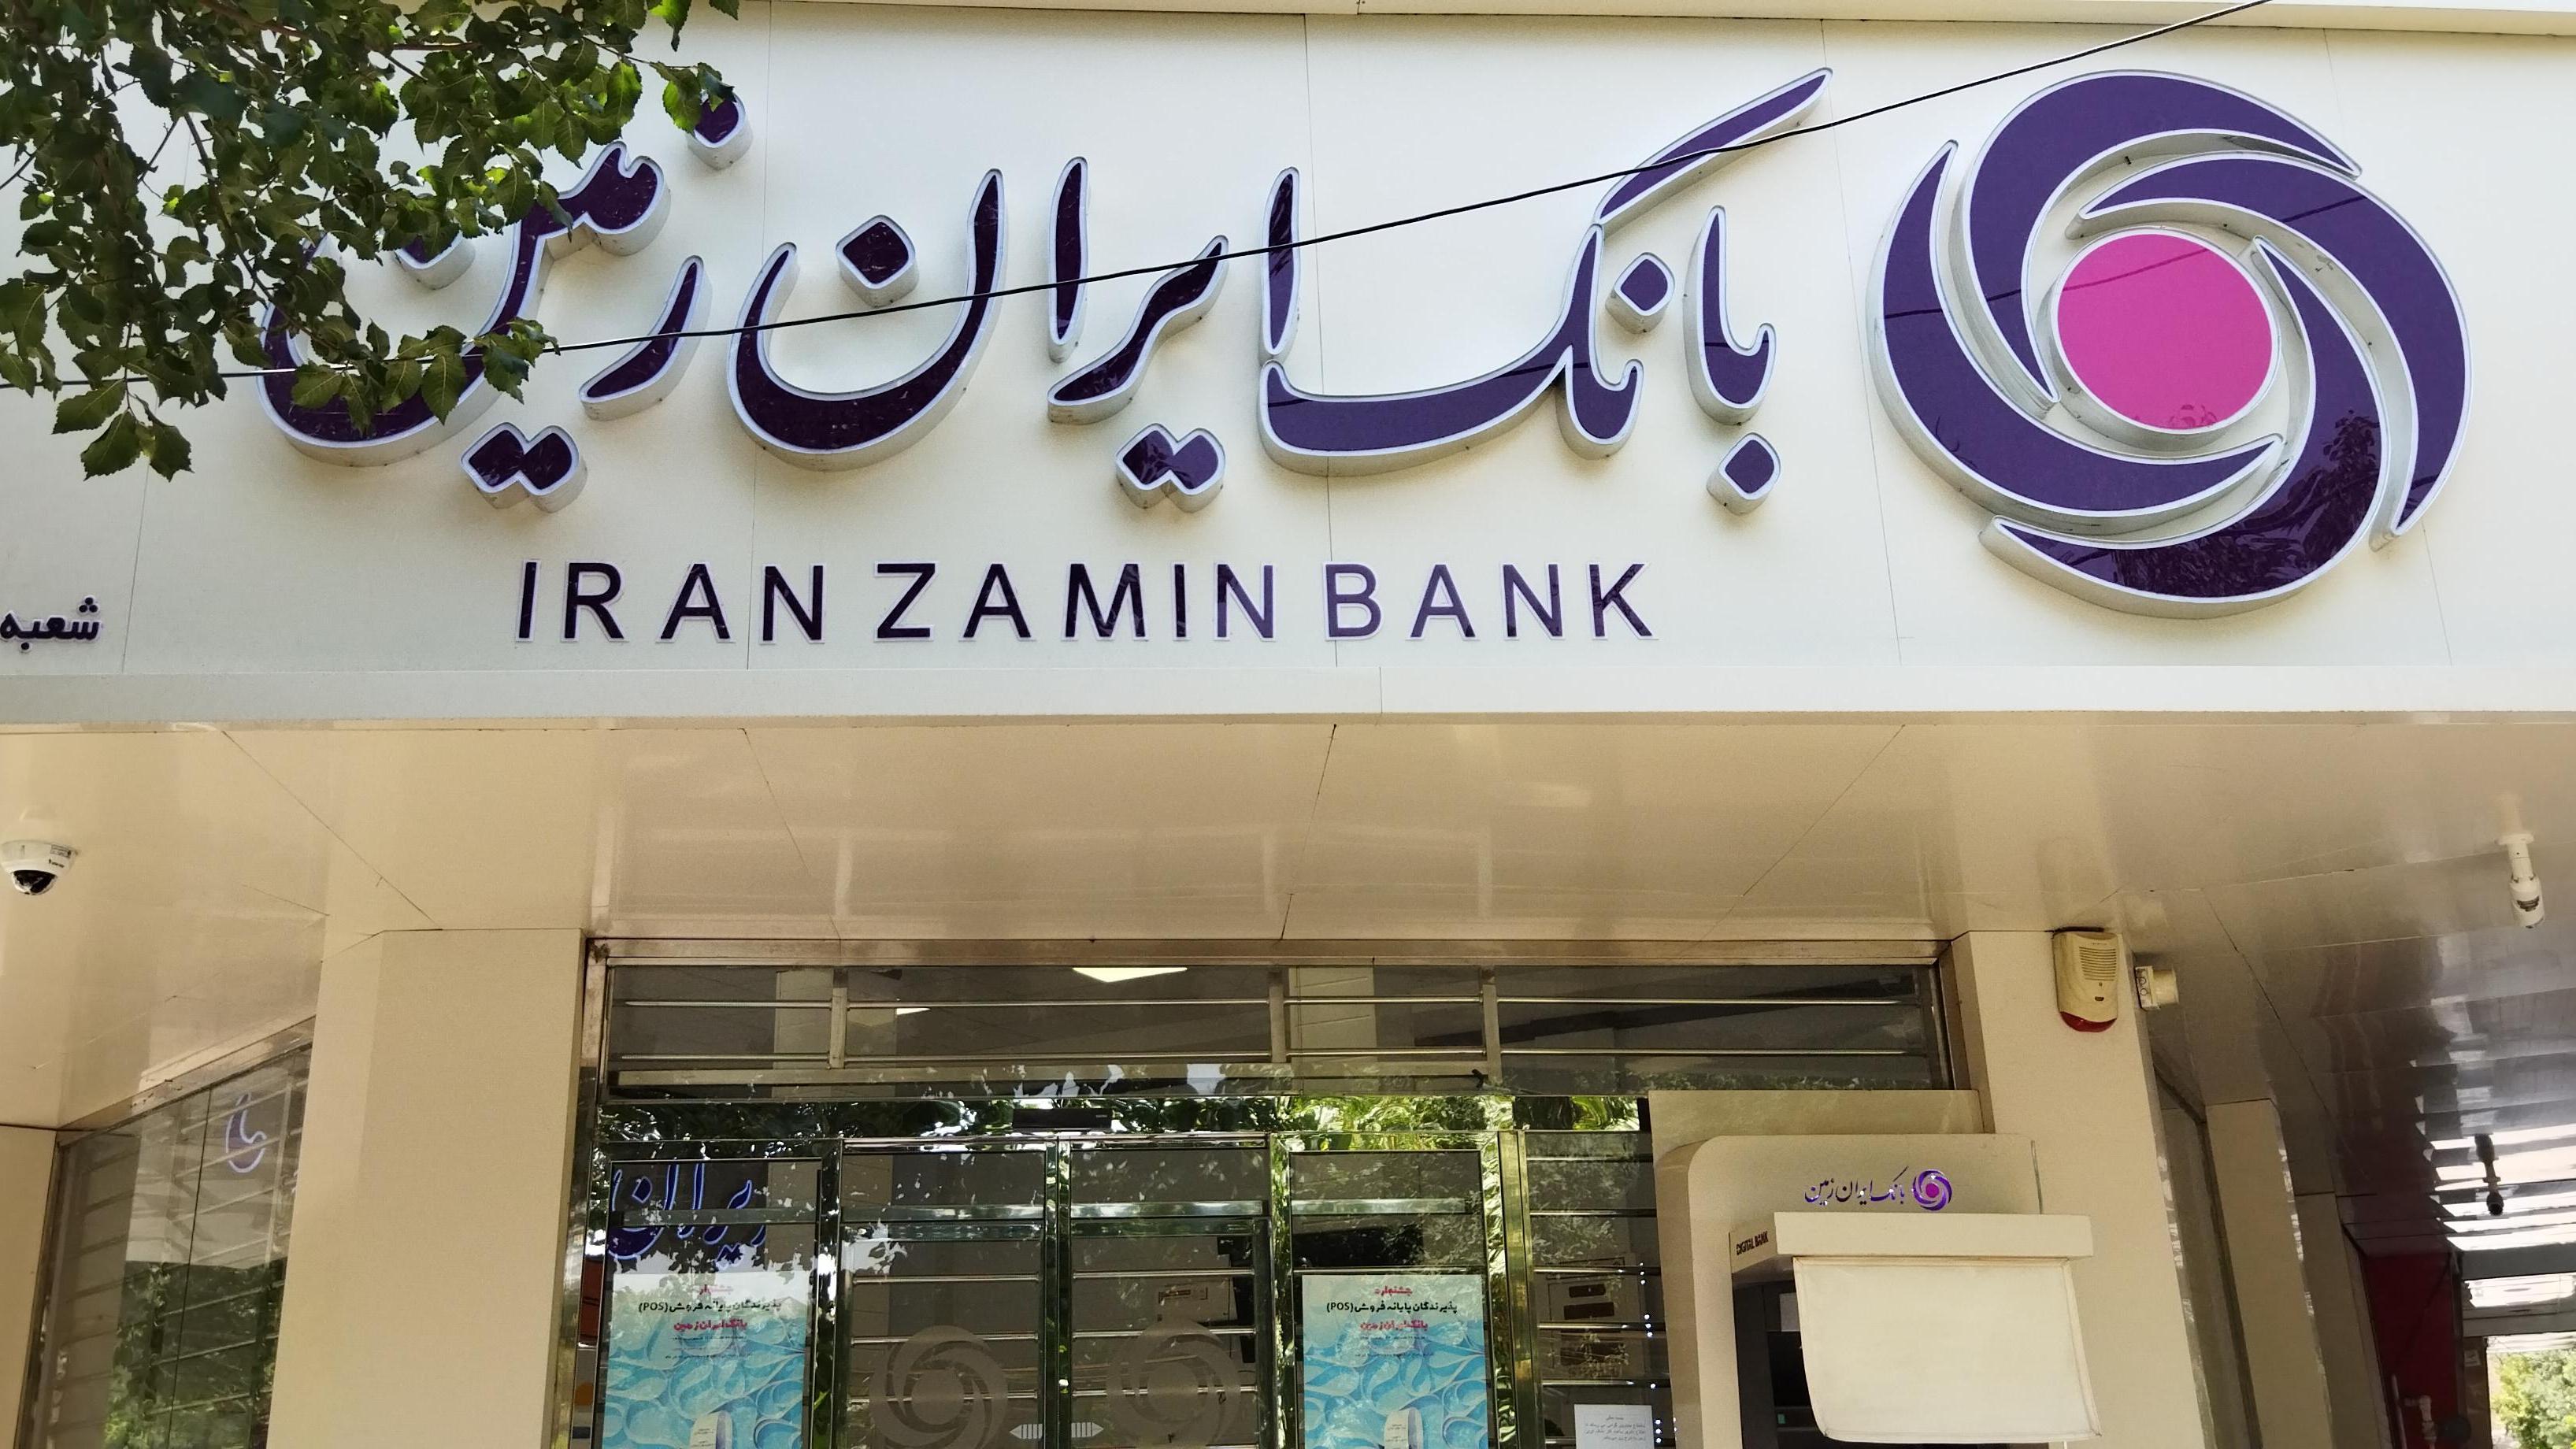 راهکار بانک ایران زمین برای تحقق مولدسازی اموال مازاد 